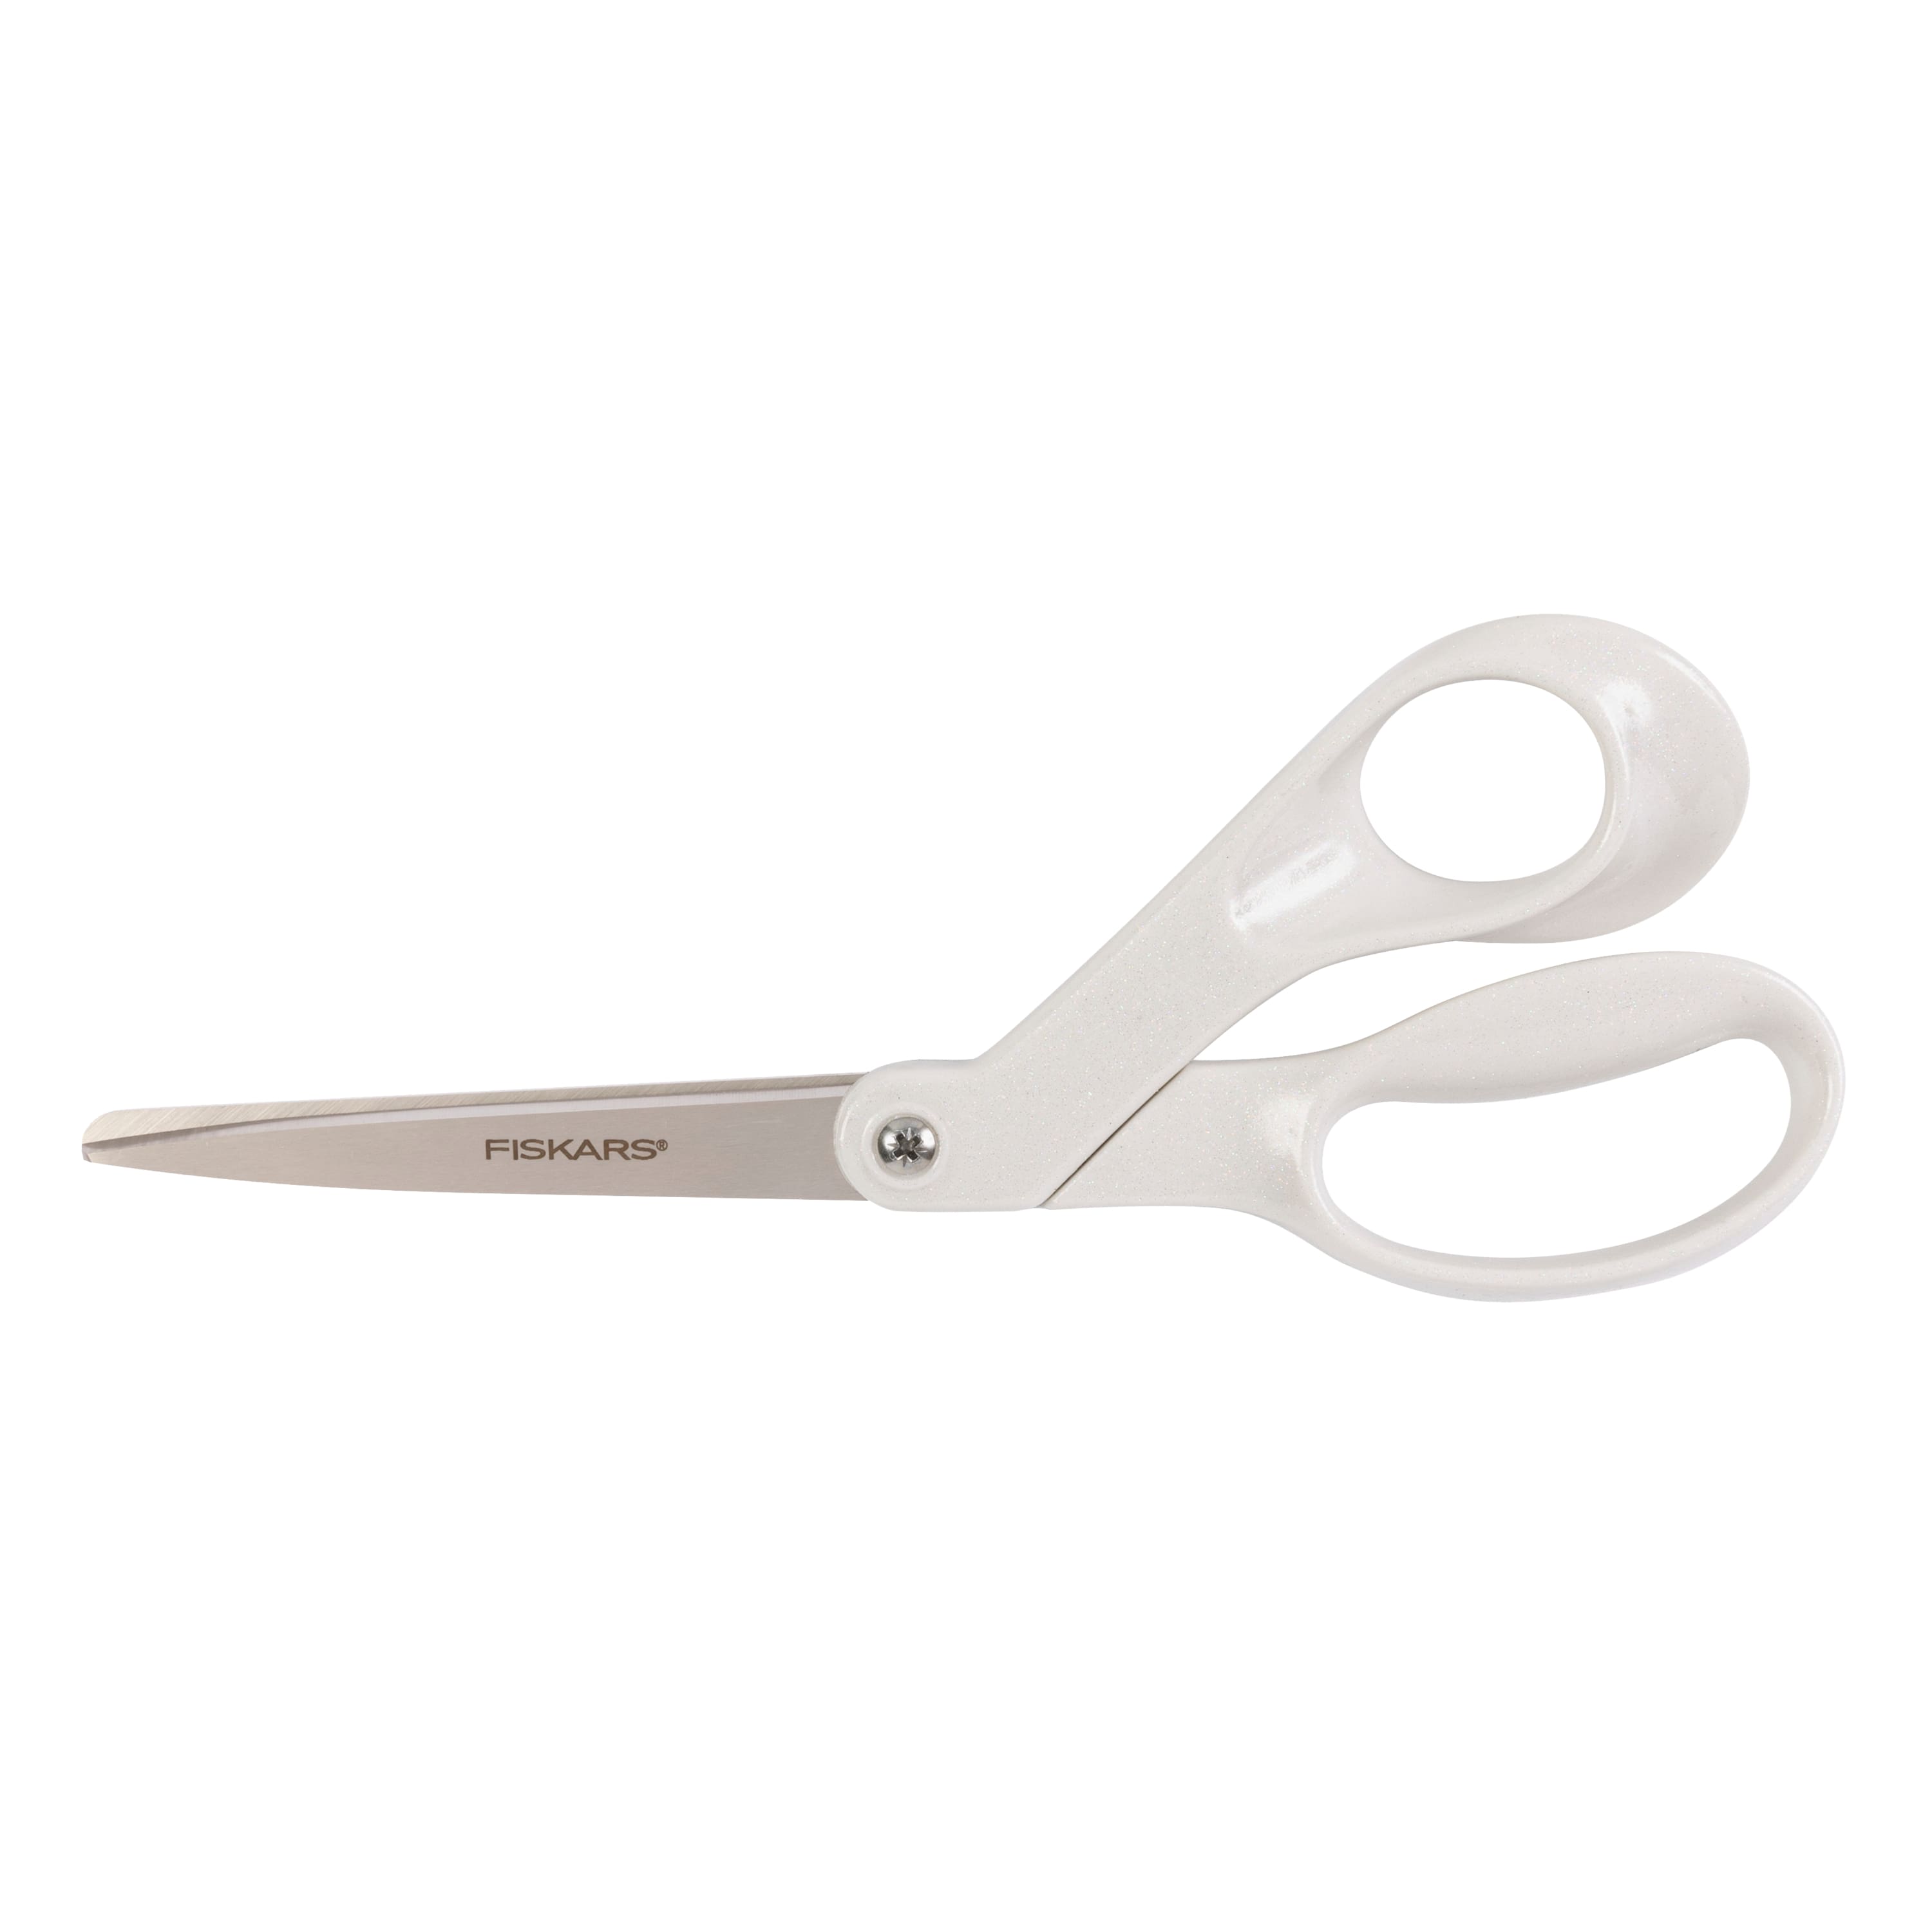 Fiskars Functional Form scissors, white